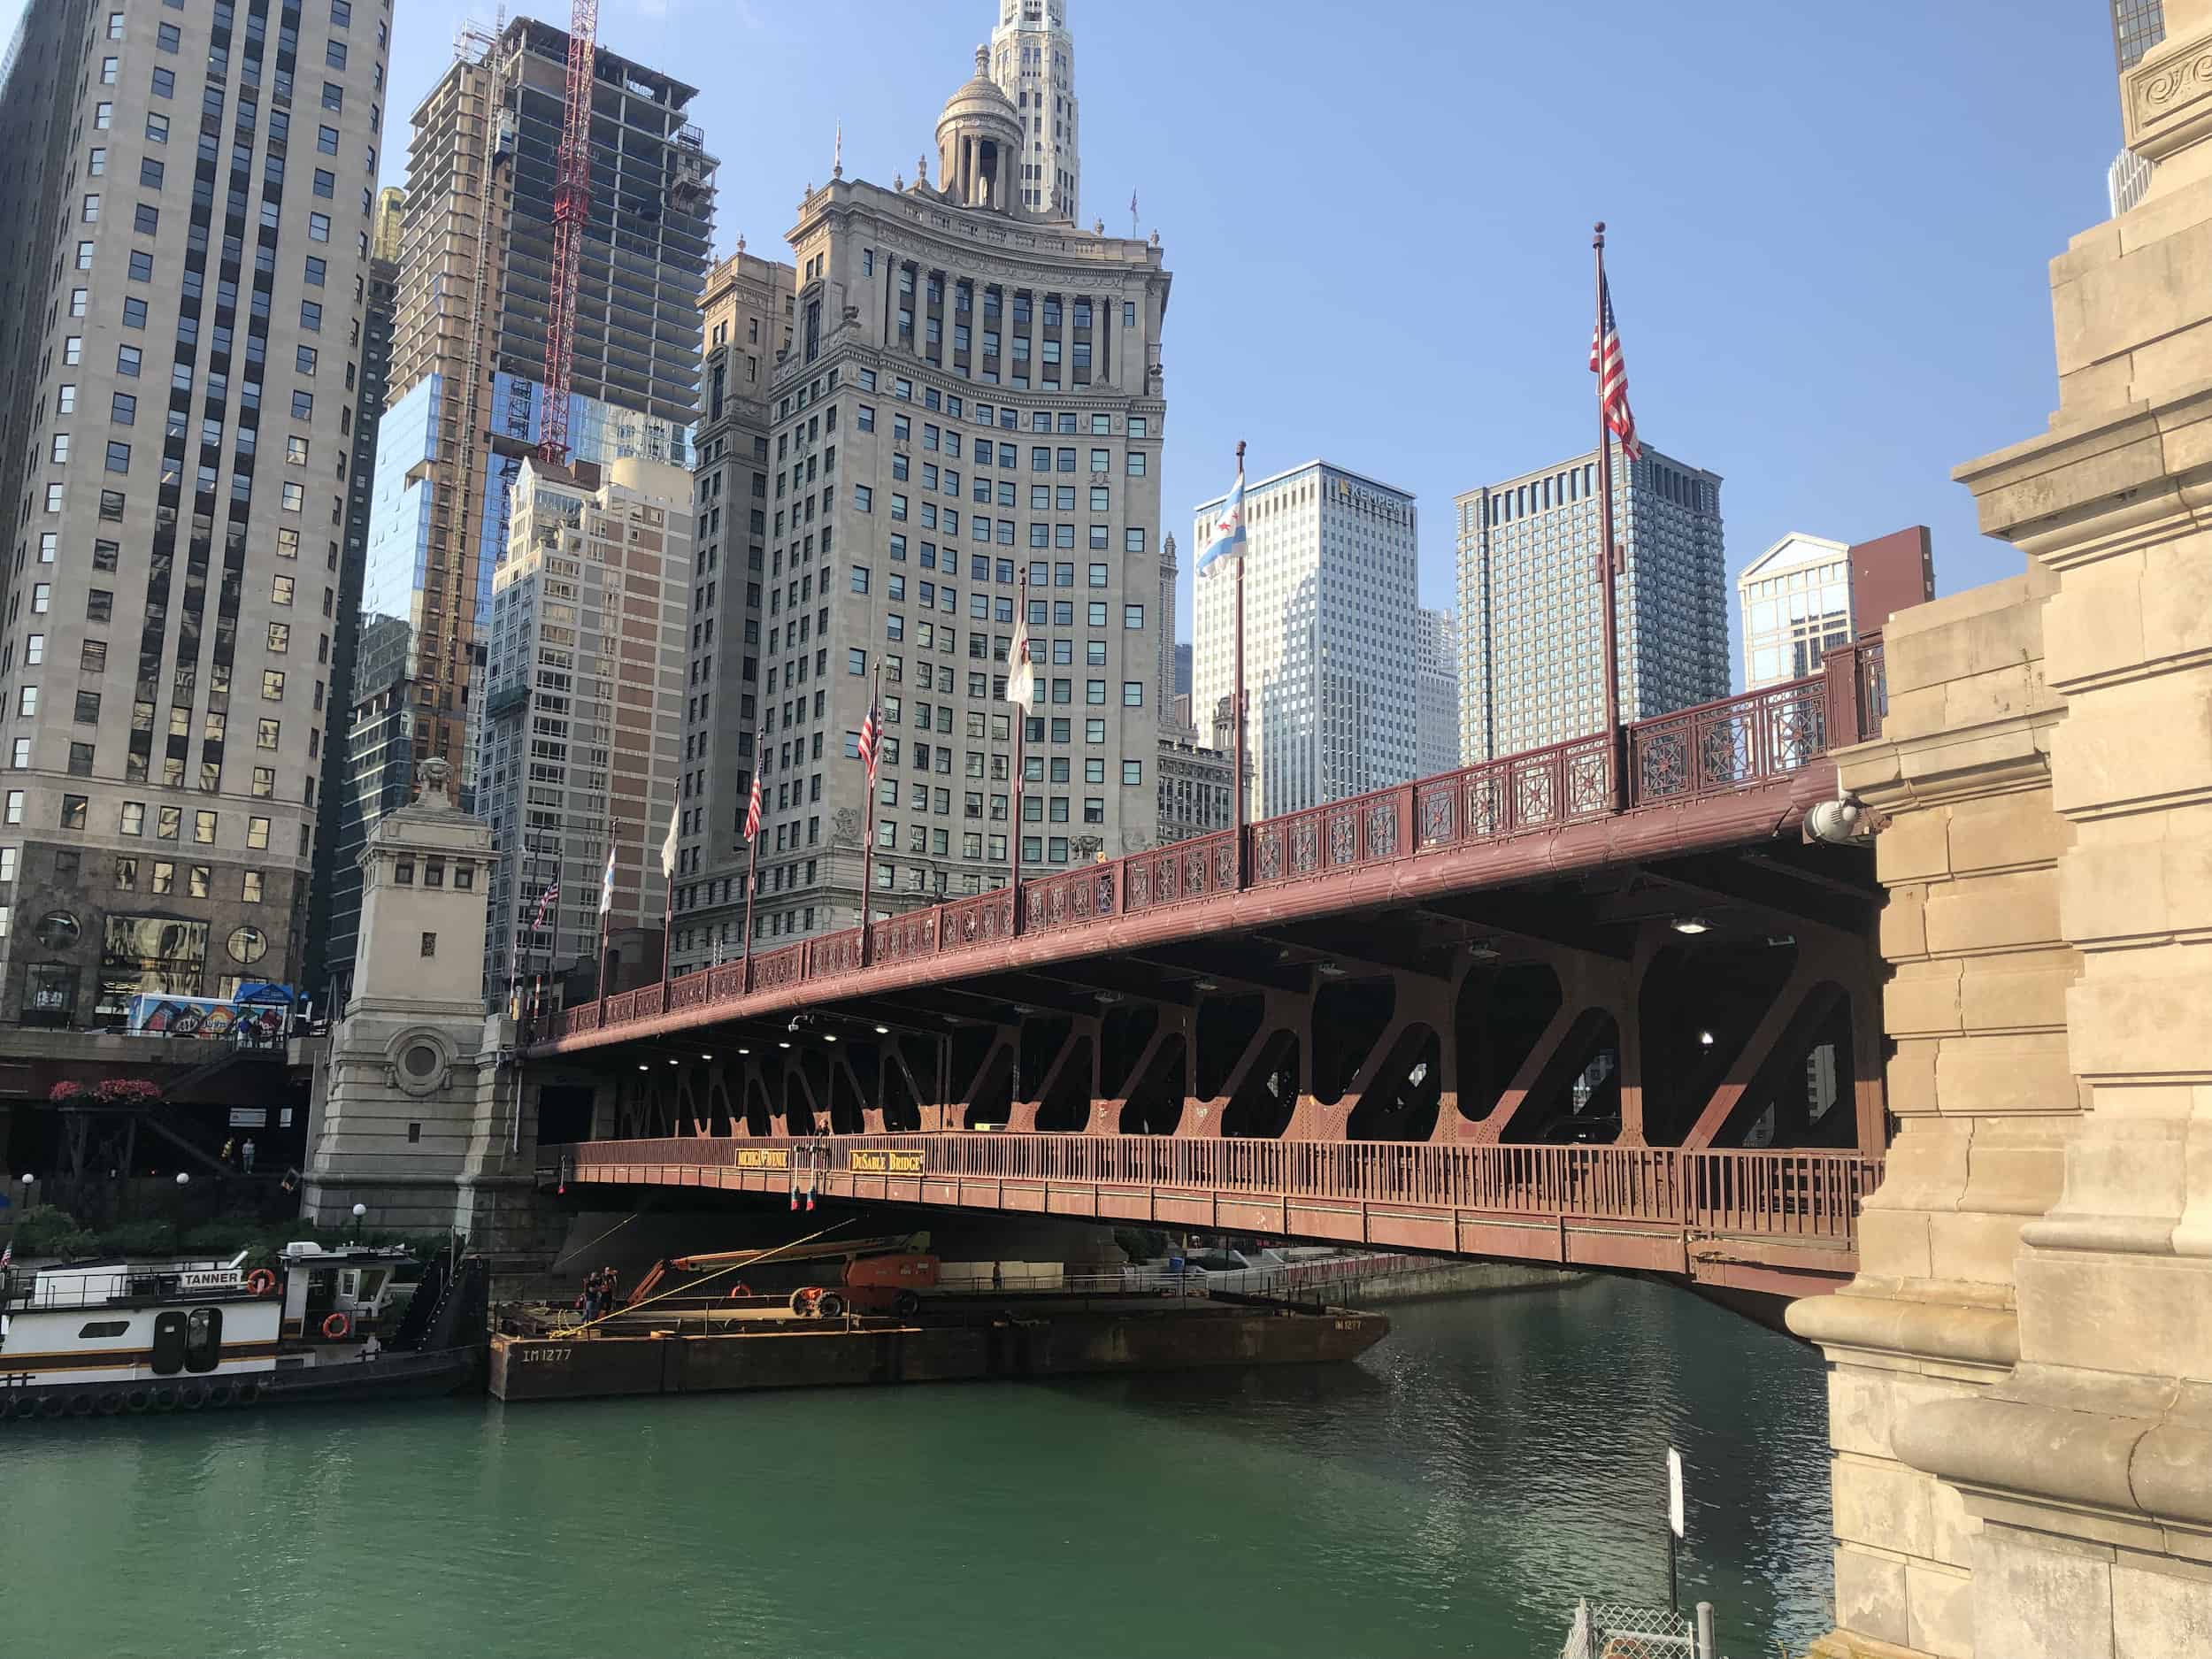 Michigan Avenue Bridge over the Chicago River in Chicago, Illinois